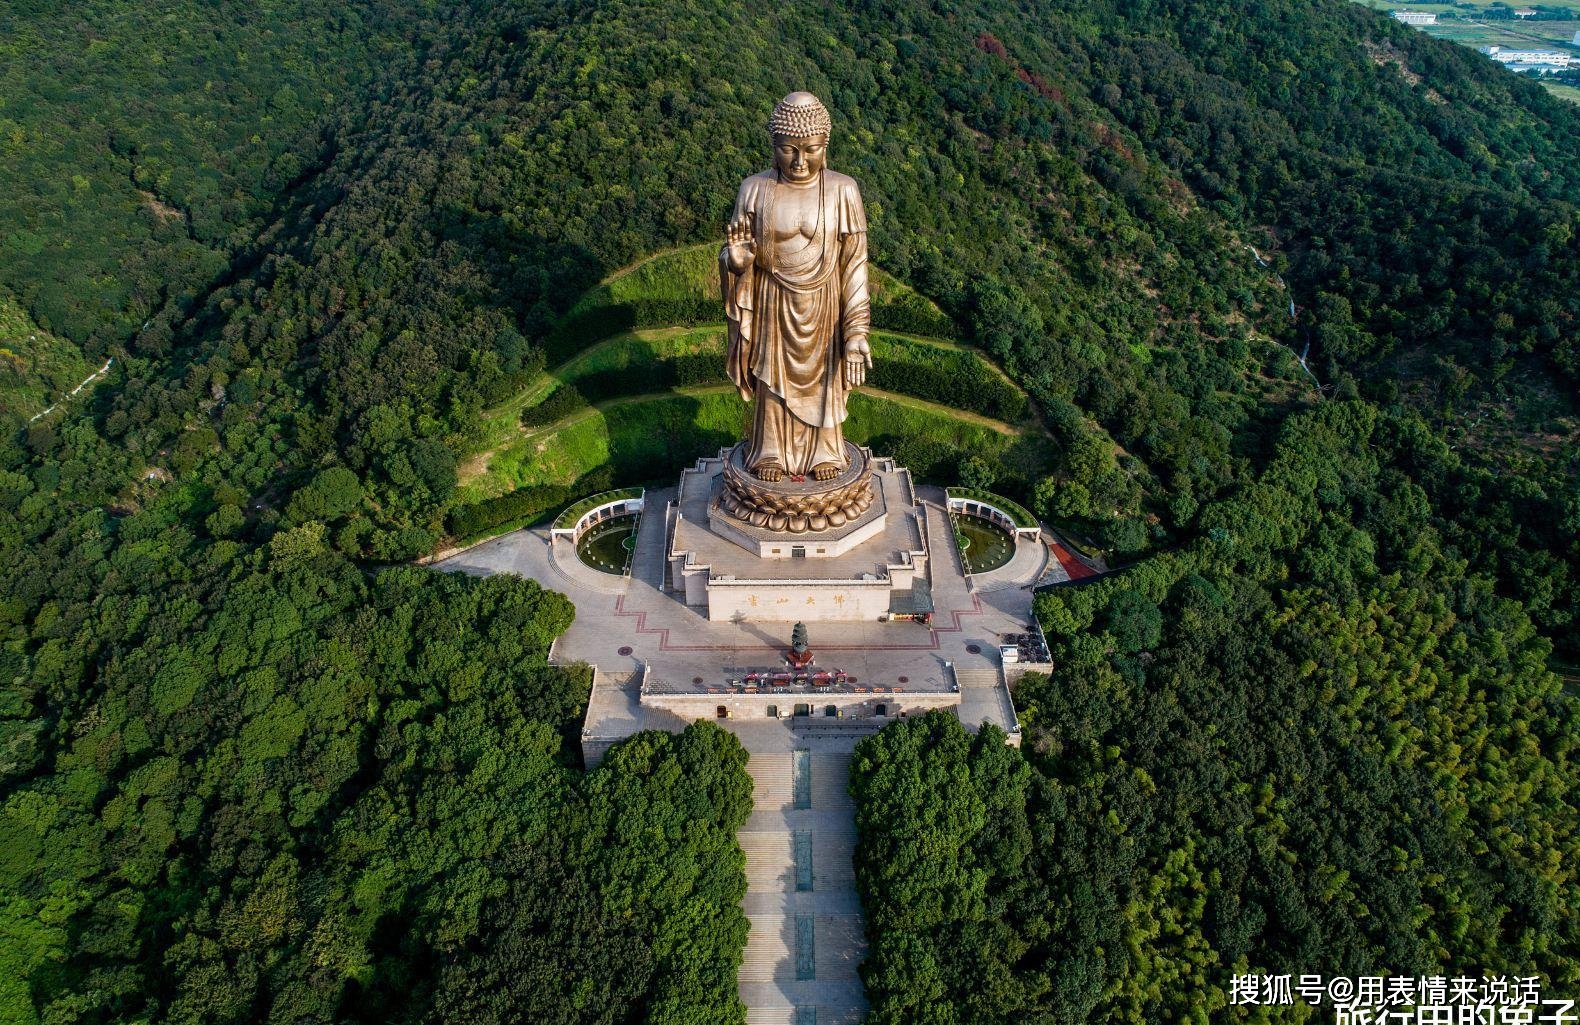 原创世界最大"释迦牟尼佛像,景区庄严肃穆,藏有5大玄机